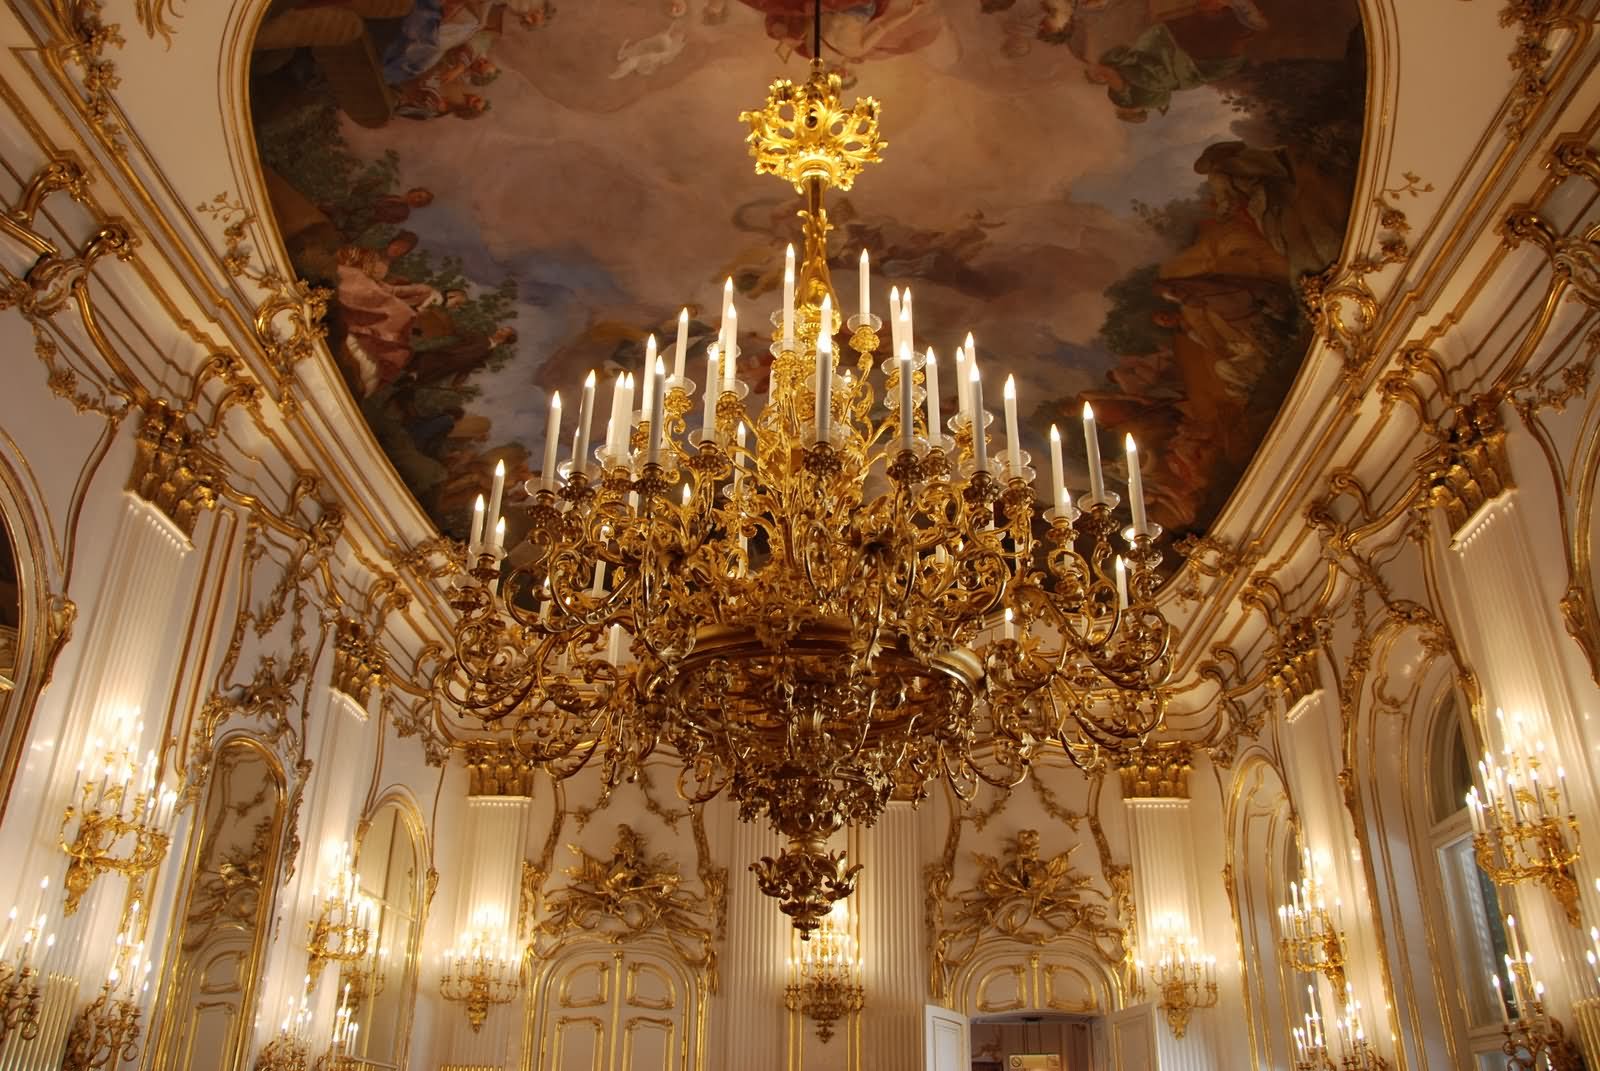 Chandelier Inside The Schonbrunn Palace